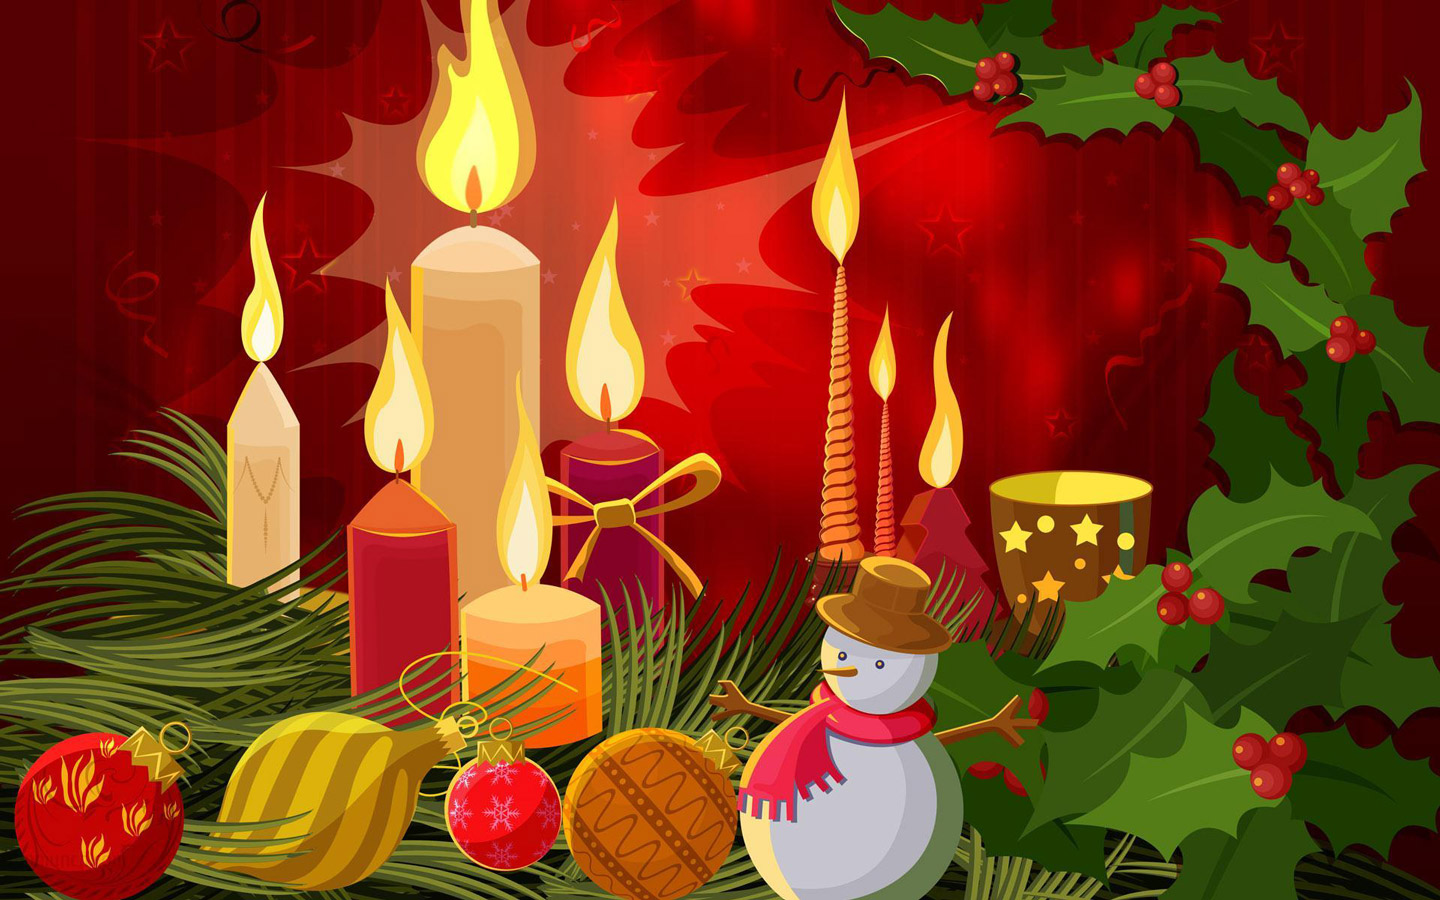 Candles Snowman Christmas Holiday Puter Desktop Wallpaper